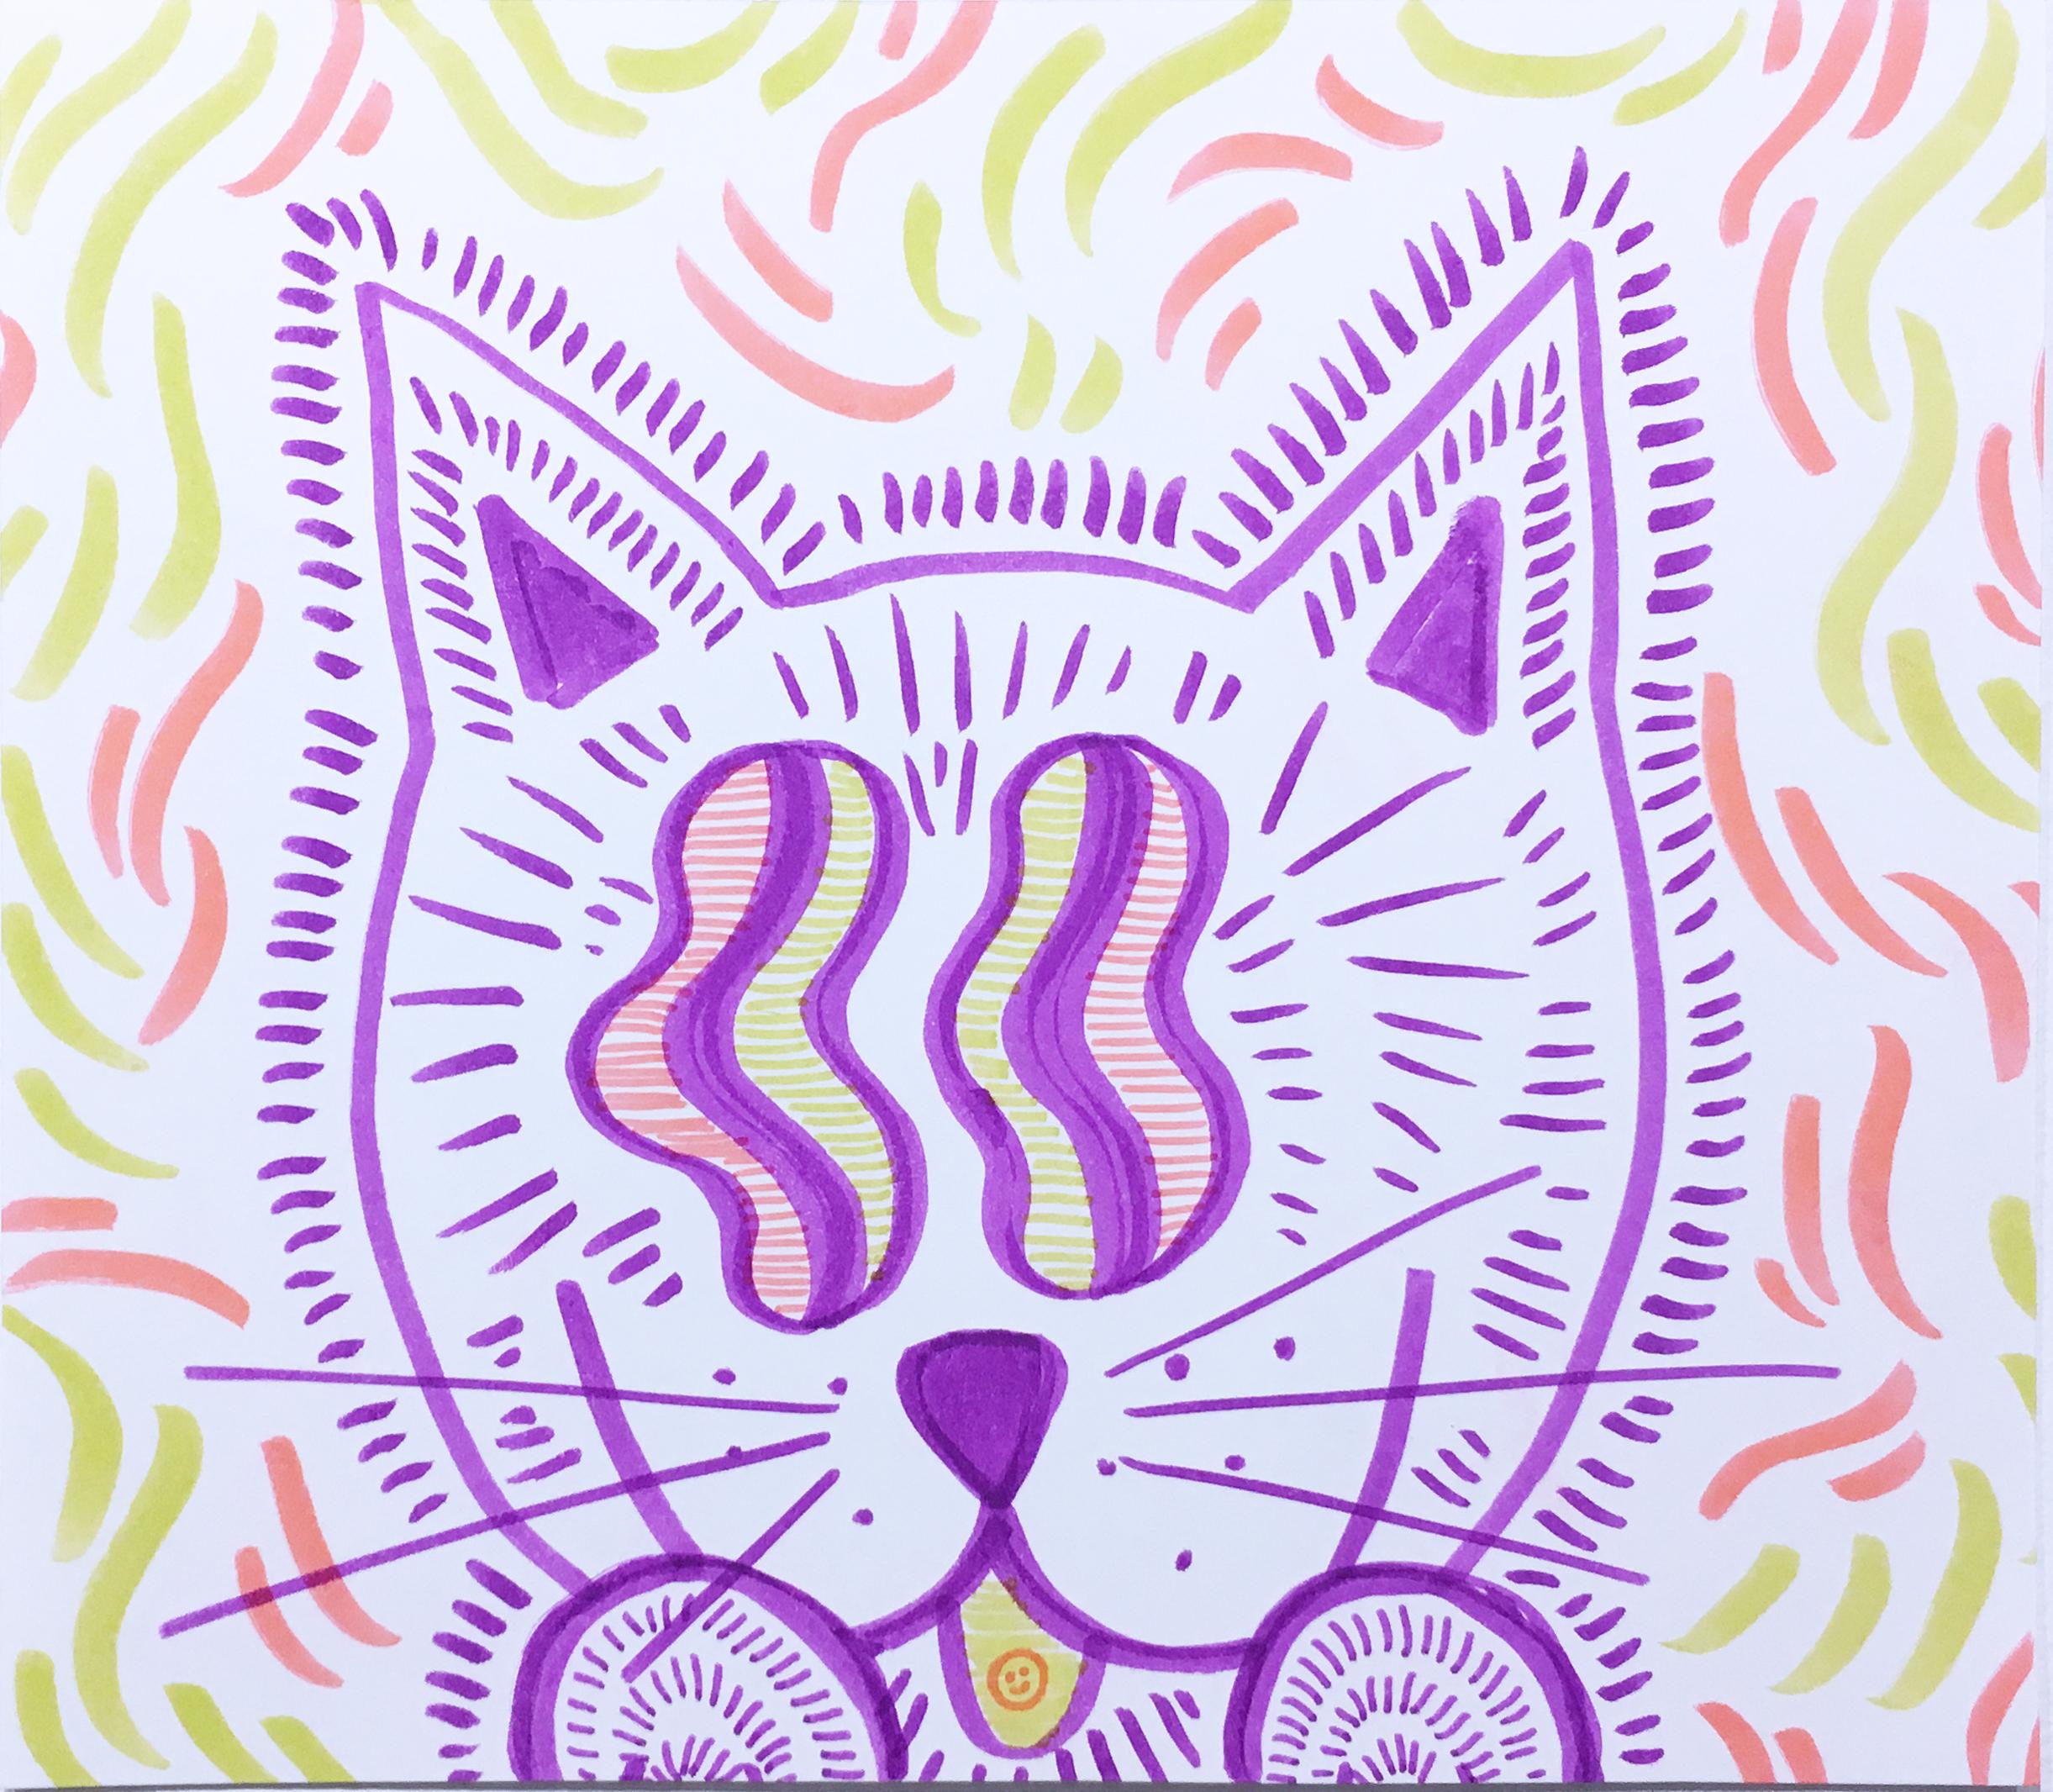 Figurative Art SarahGrace - Bonbonnière Kitty, dessin à l'aquarelle sur papier, Pop Art, chat avec motif graphique ondulé